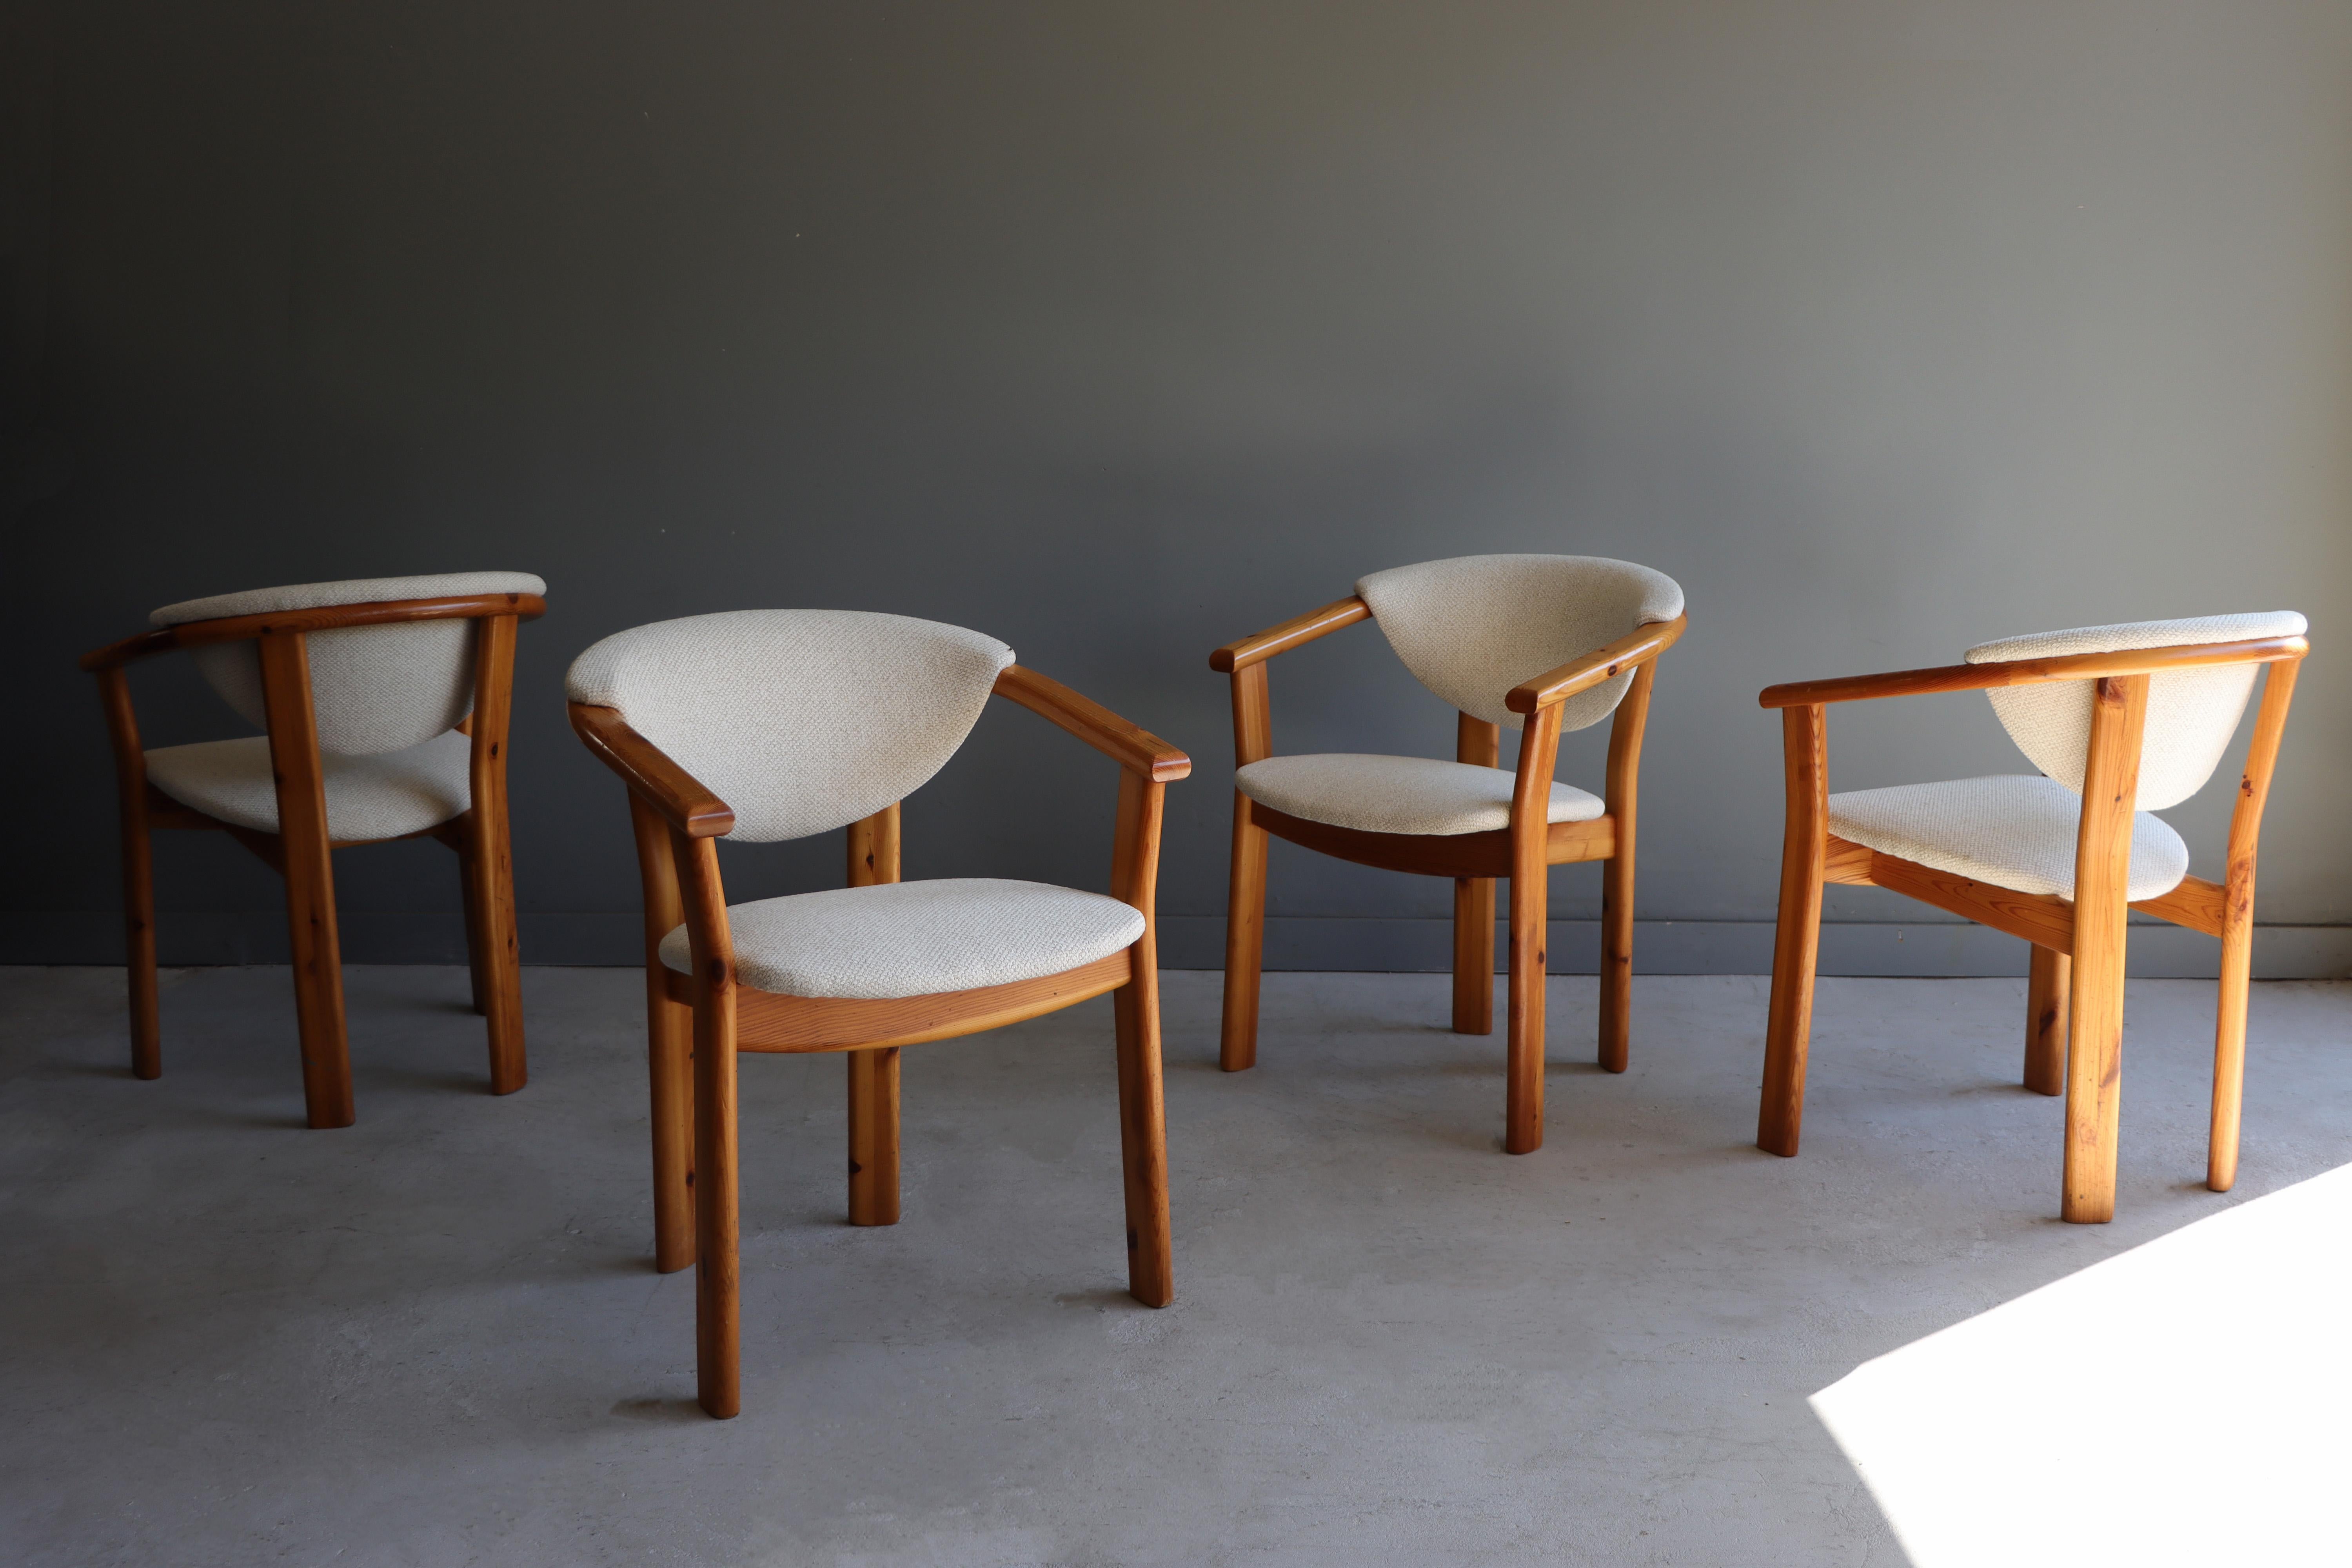 Schöne Reihe von Vintage skandinavischen bewaffneten Esszimmerstühle. Diese skulpturalen Stühle sind aus massivem Kiefernholz gefertigt und mit Knoll Whitewall-Stoff neu gepolstert. Der Hersteller ist zwar nicht bekannt, aber diese Stühle erfüllen